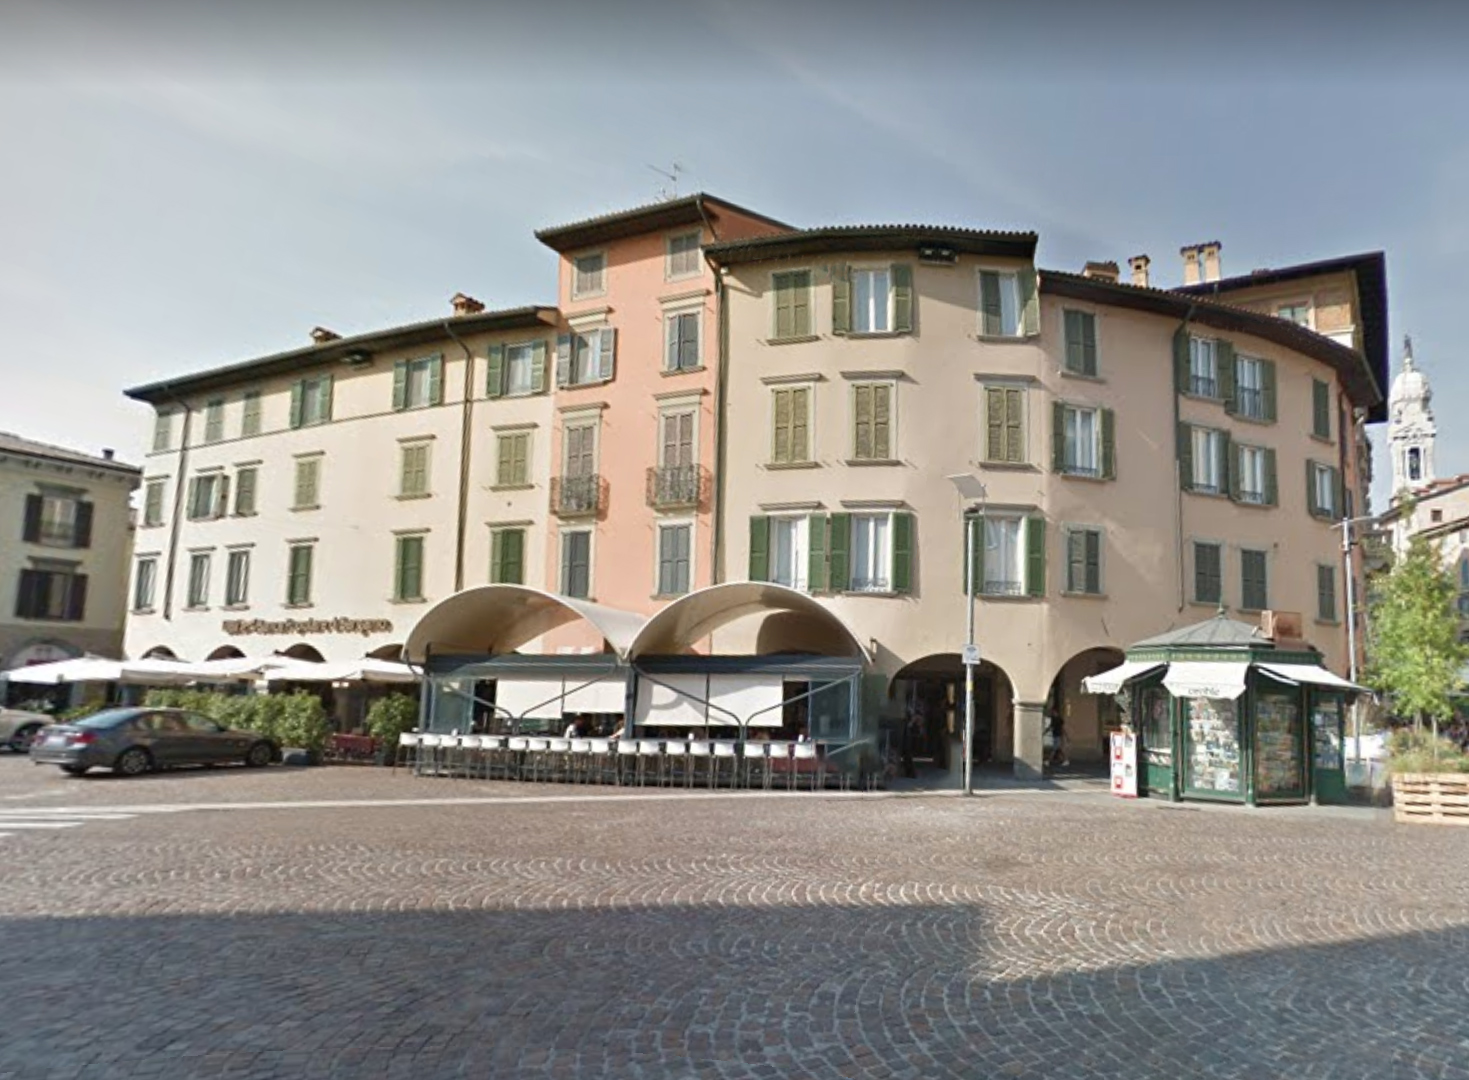 Case con portici in piazza Pontida (casa) - Bergamo (BG) 